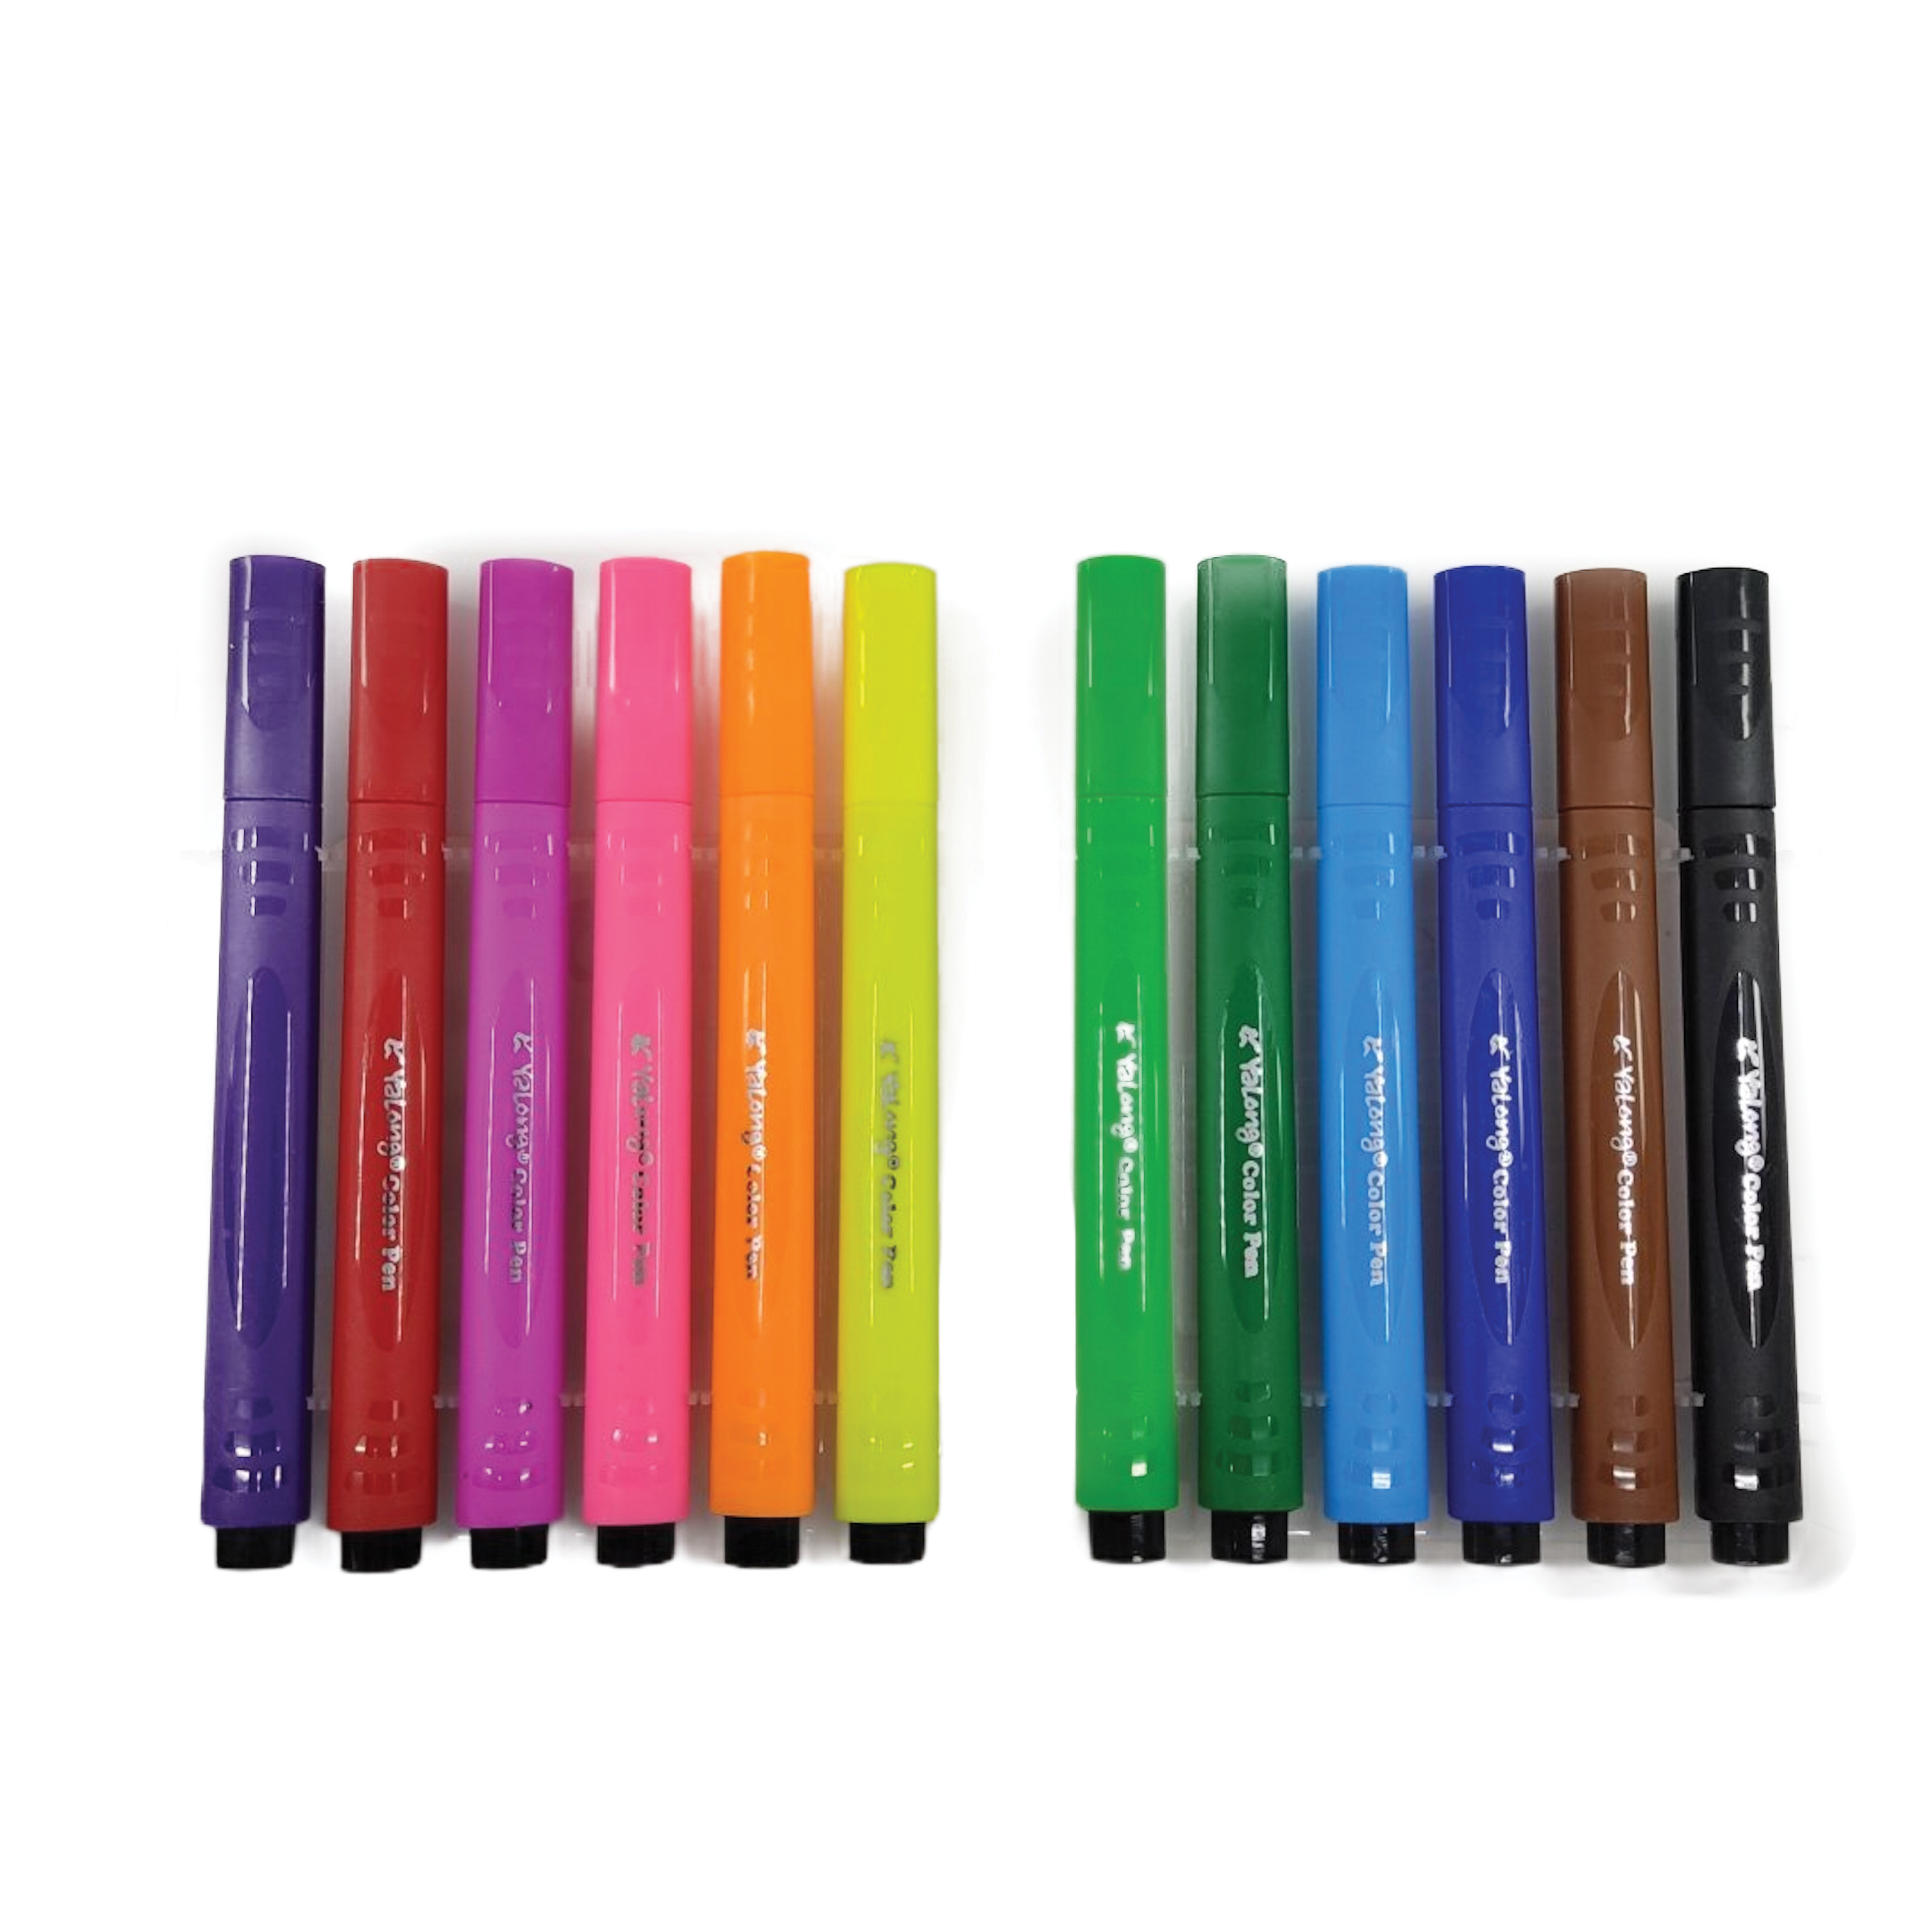 Μαρκαδόροι Ζωγραφικής Χοντροί Τριγωνικοί Water Color Pen Κασετίνα Yalong- 12 τμχ.17x11 Ass